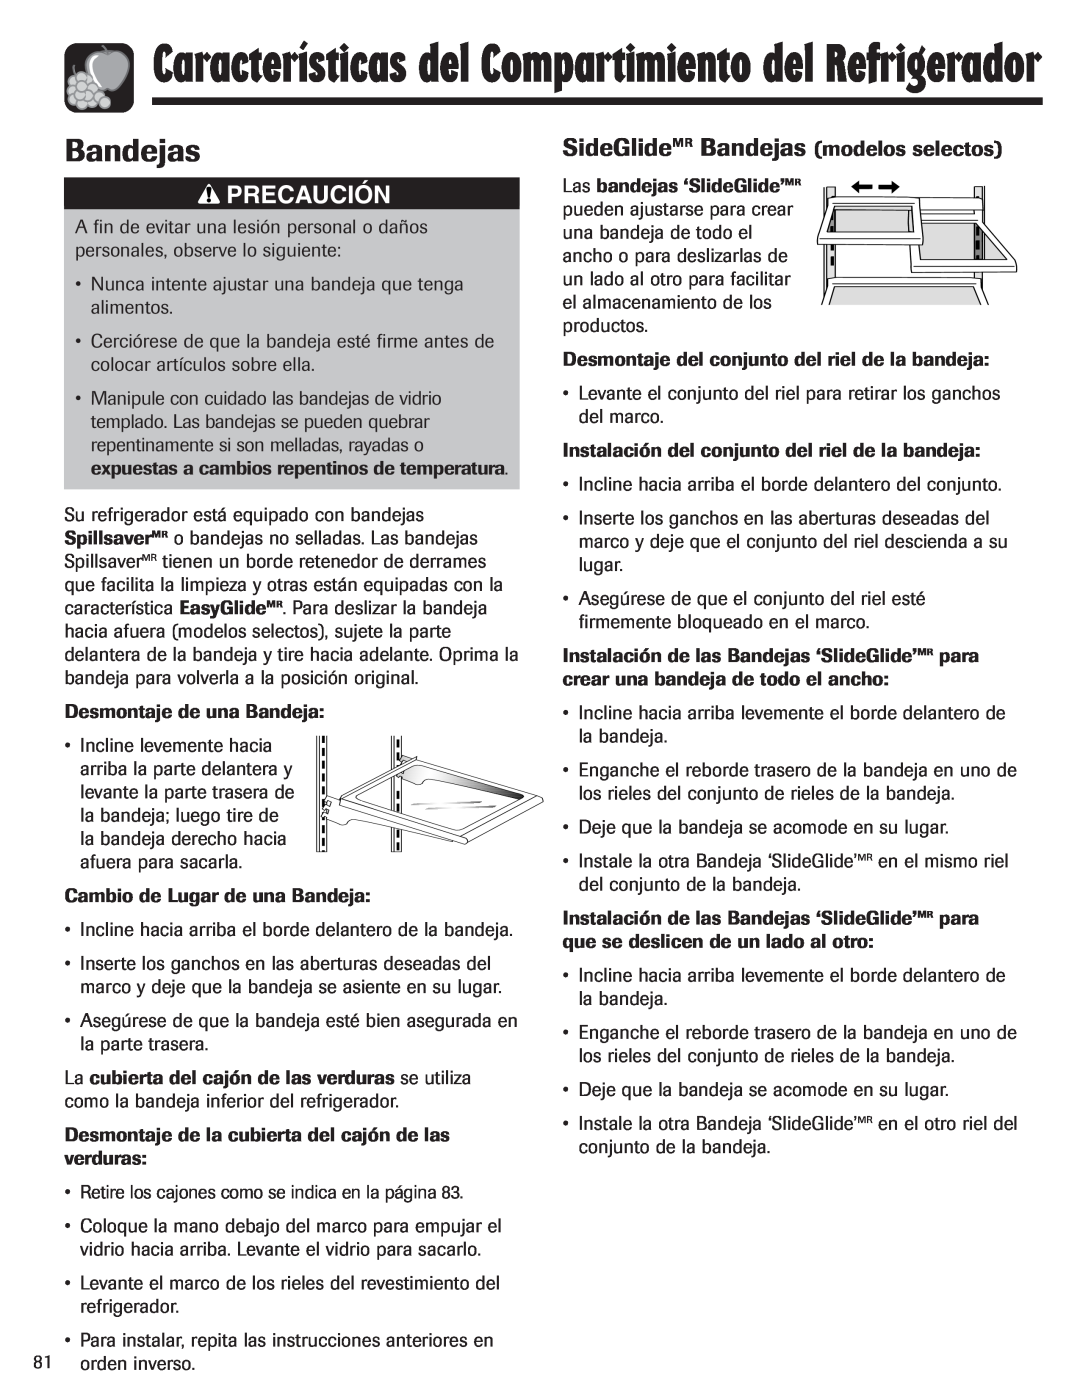 Amana ASD2624HEQ important safety instructions SideGlideMR Bandejas modelos selectos, Precaución 